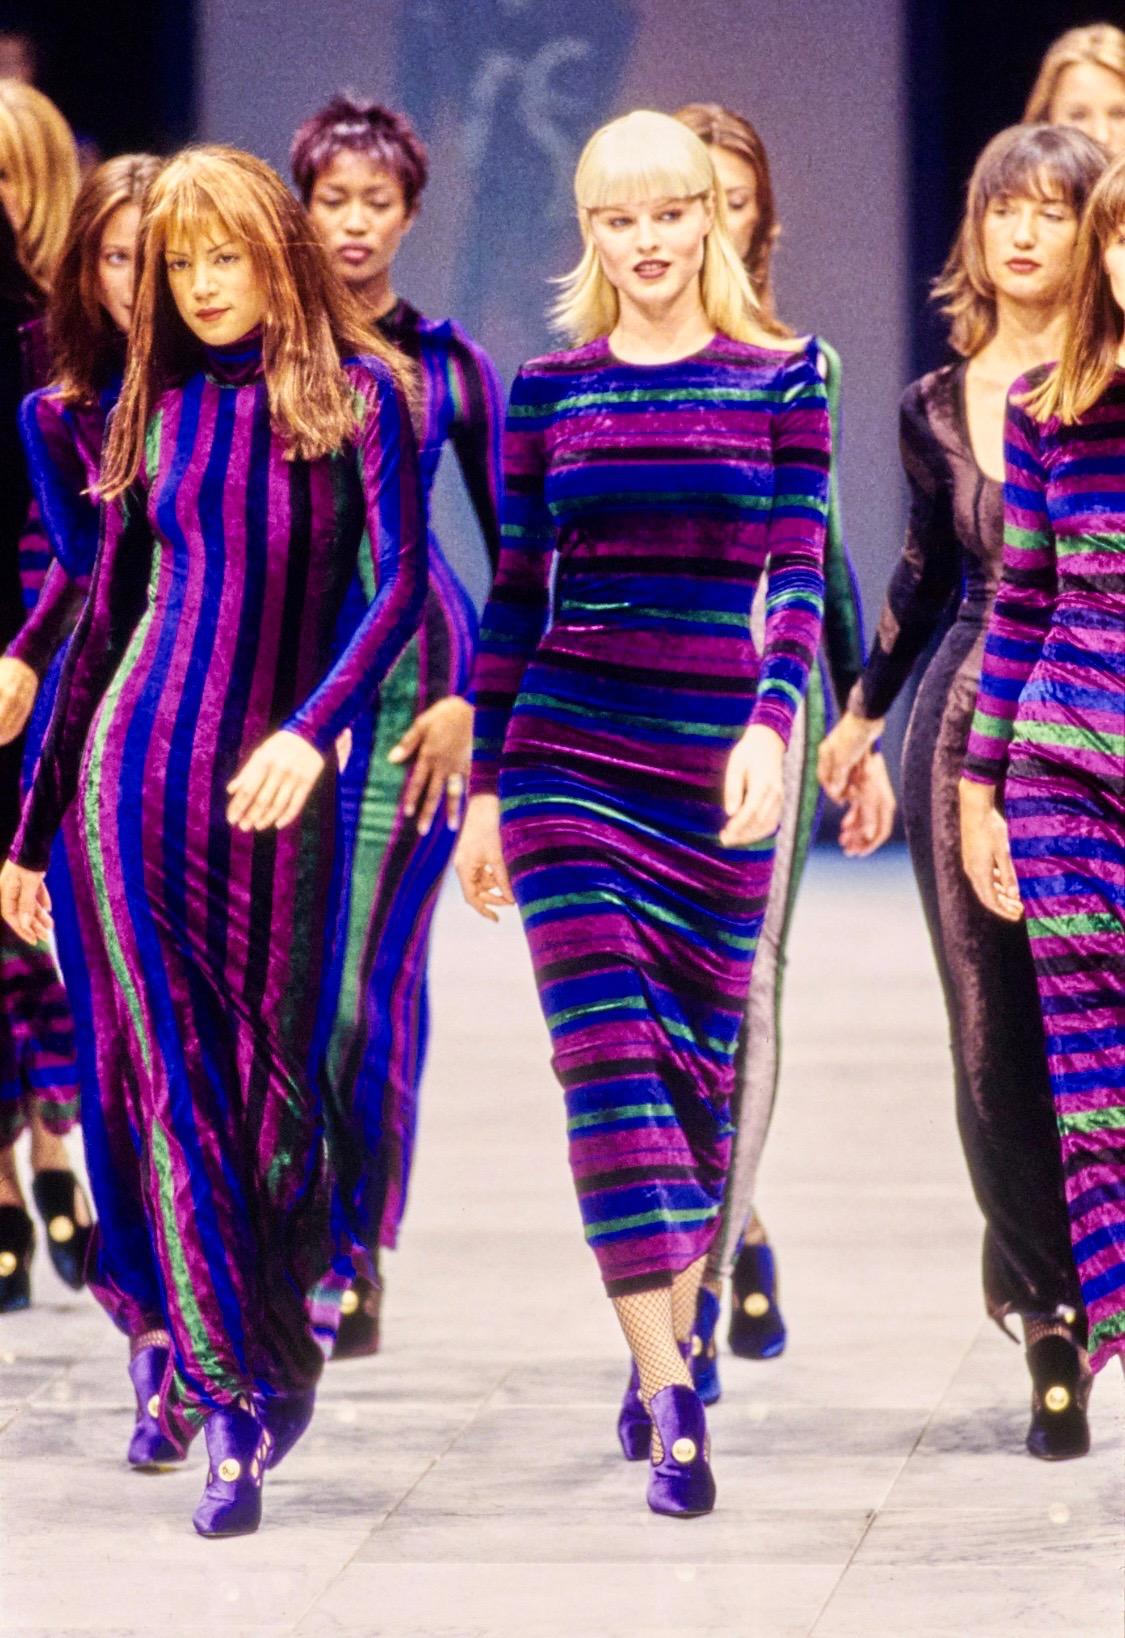 Présentation d'une mini robe en velours rayé Gianni Versace Couture, conçue par Gianni Versace. La version longue de cette robe a été présentée en finale du défilé automne-hiver 1993 par Naomi Campbell. Les riches rayures bleues et violettes de